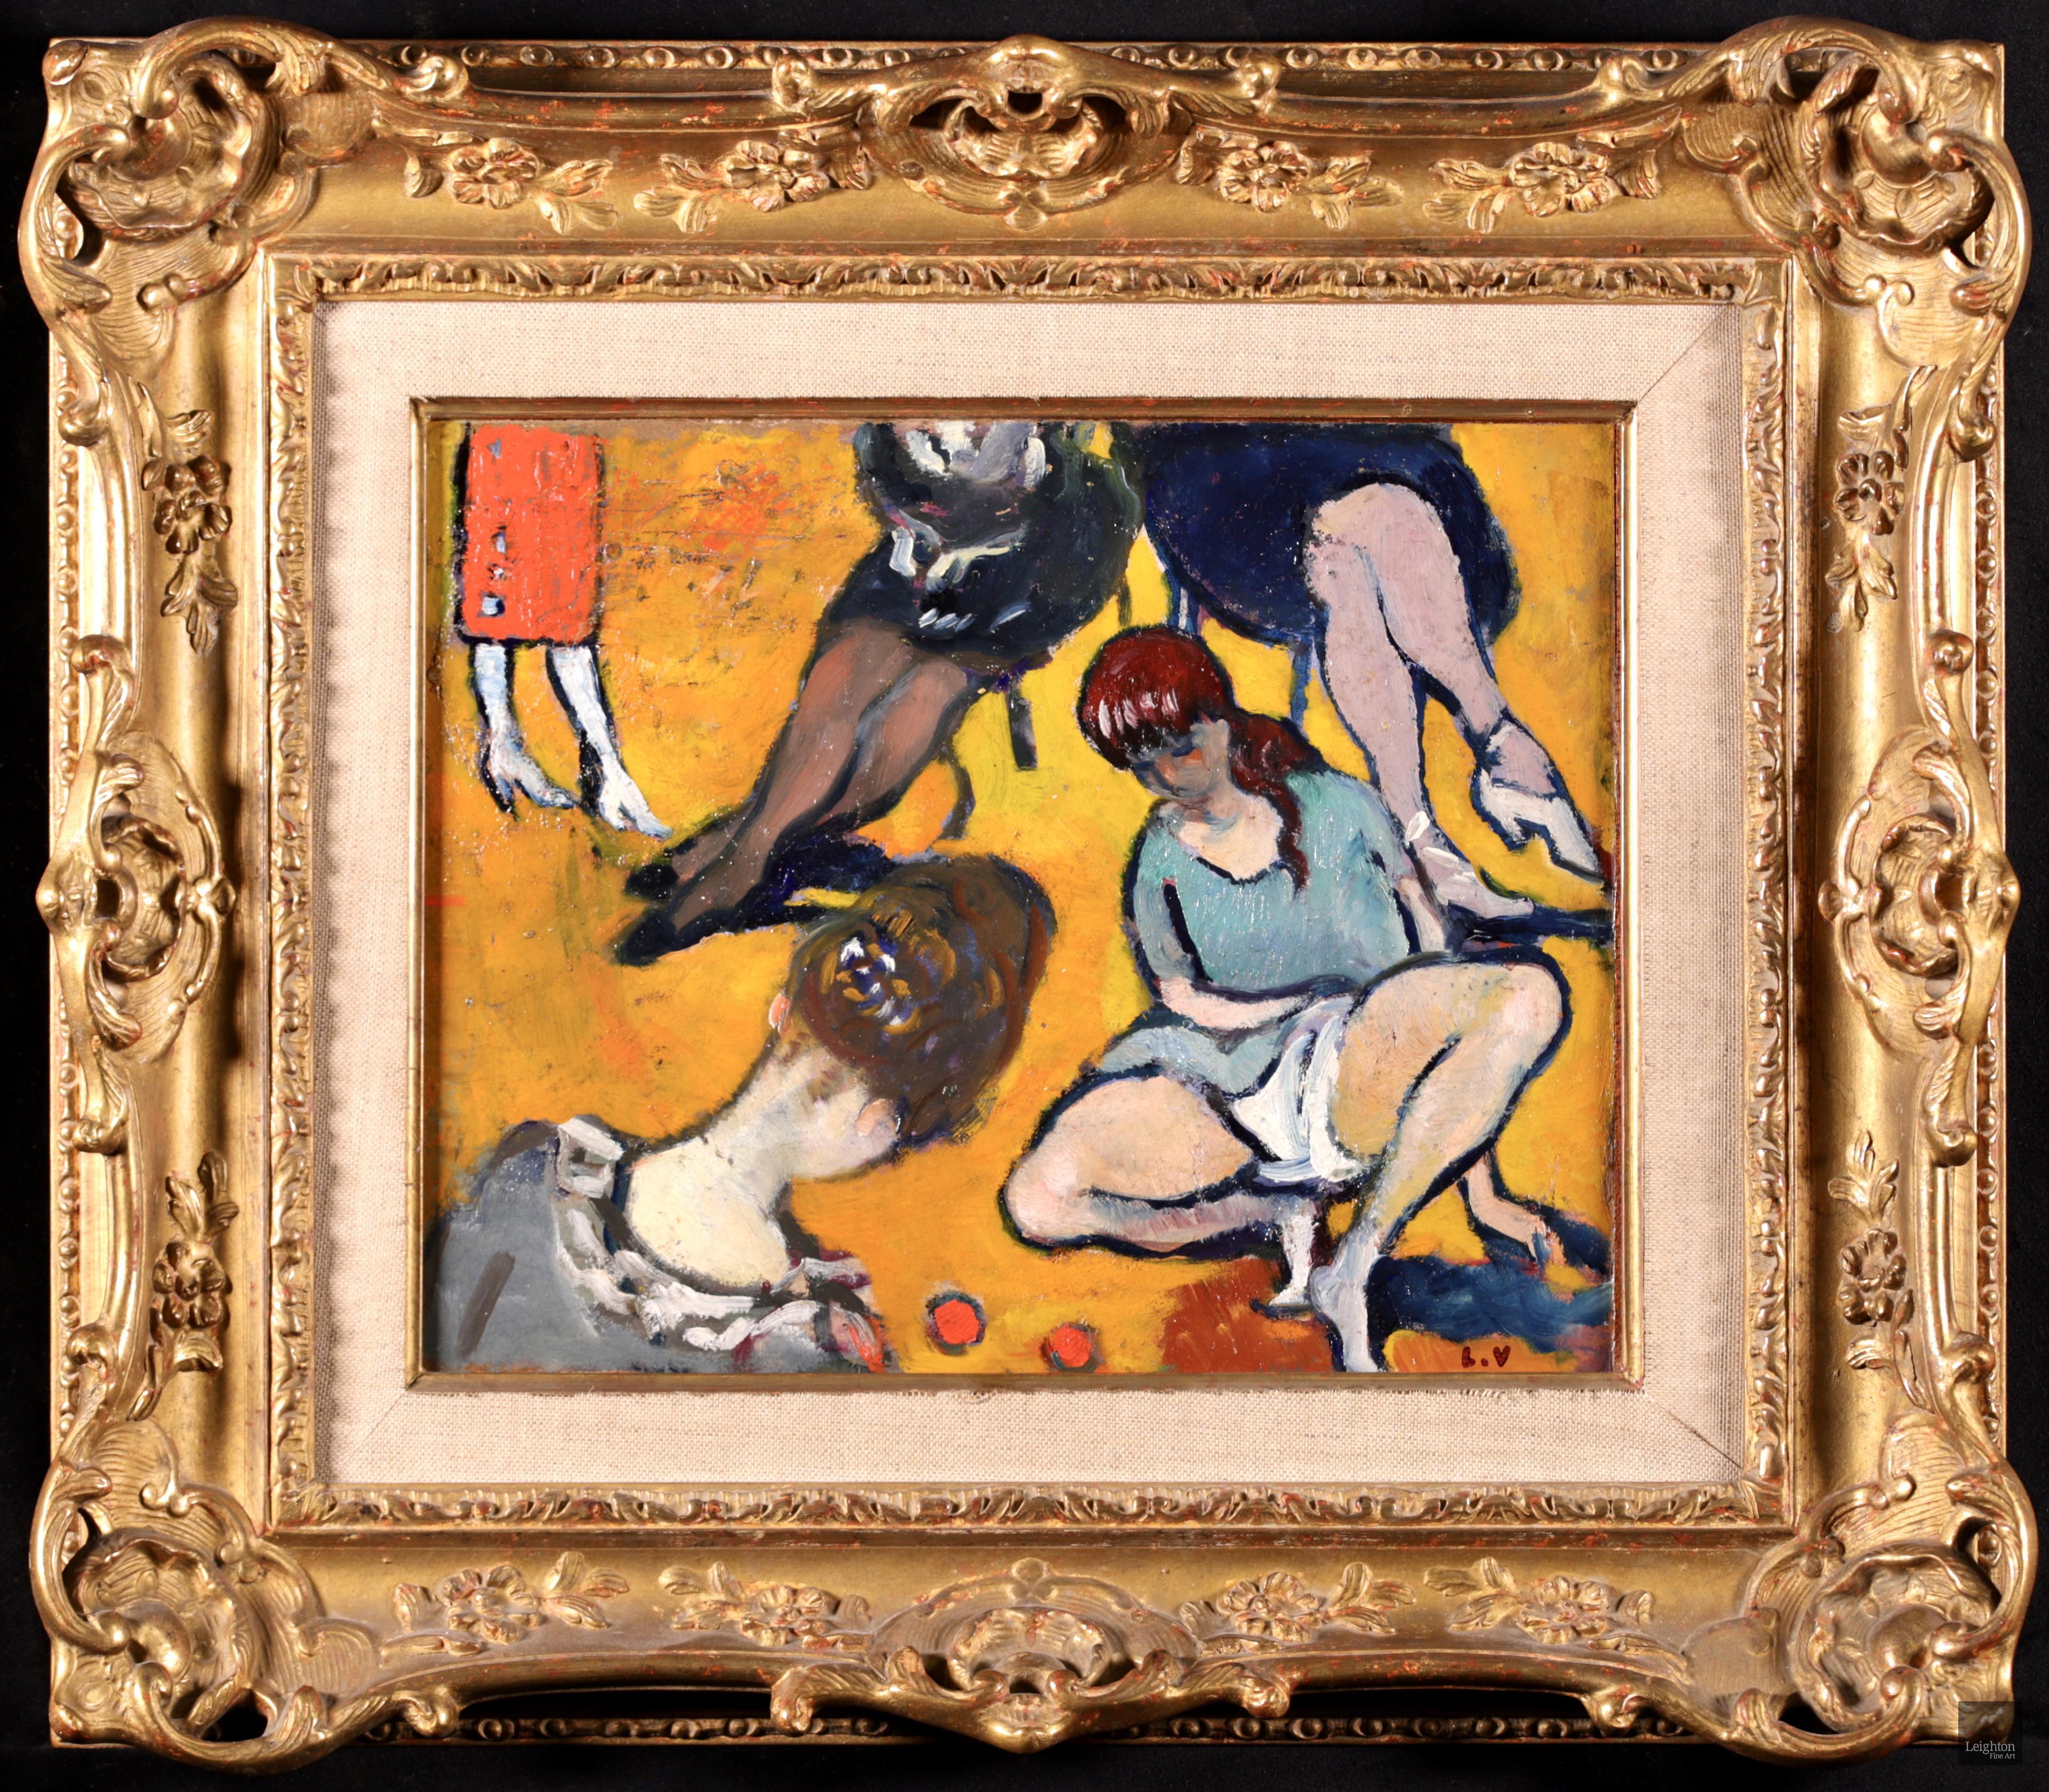 Signiertes fauvistisches figuratives Öl auf Tafel des französischen Malers Louis Valtat. Das Werk stellt zwei Mädchen dar, die mit roten Murmeln spielen. Hinter ihnen sehen wir die Beine elegant gekleideter Damen - zwei sitzen auf einem Stuhl und